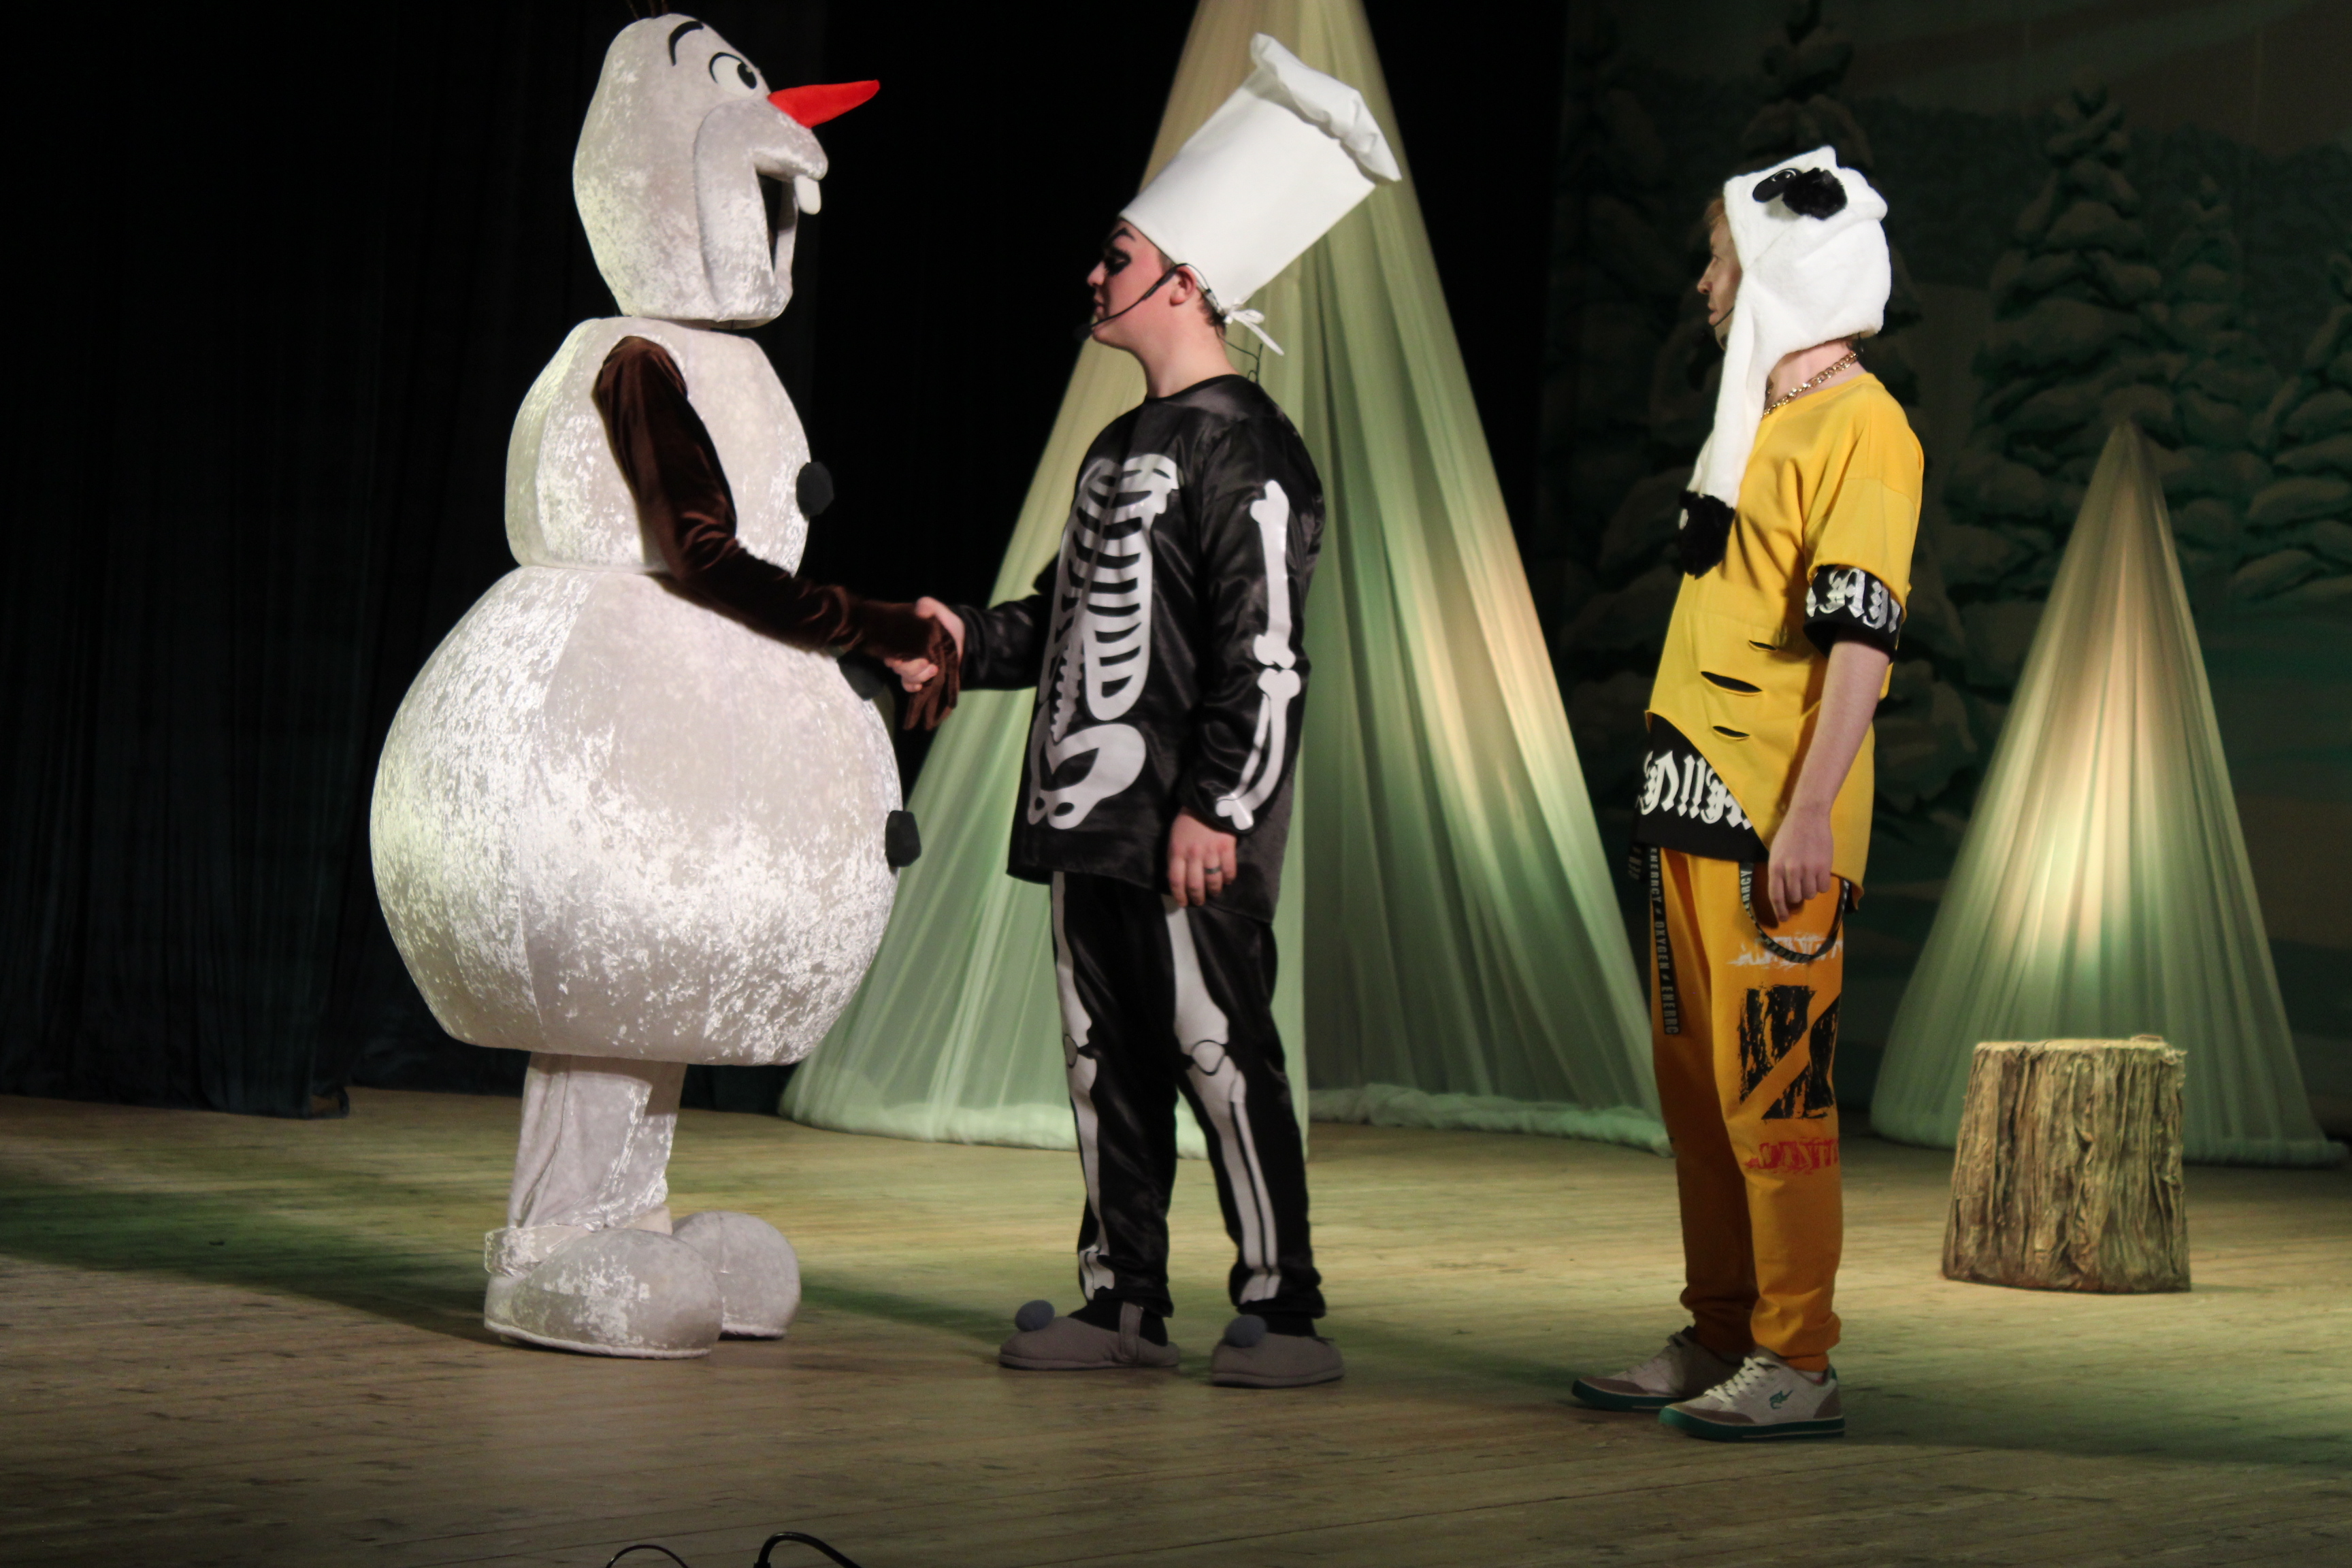 В Салавате поставили яркую театральную постановку  «Вовка в 3D-вятом царстве» для юных поклонников ТикТока и инстаграма